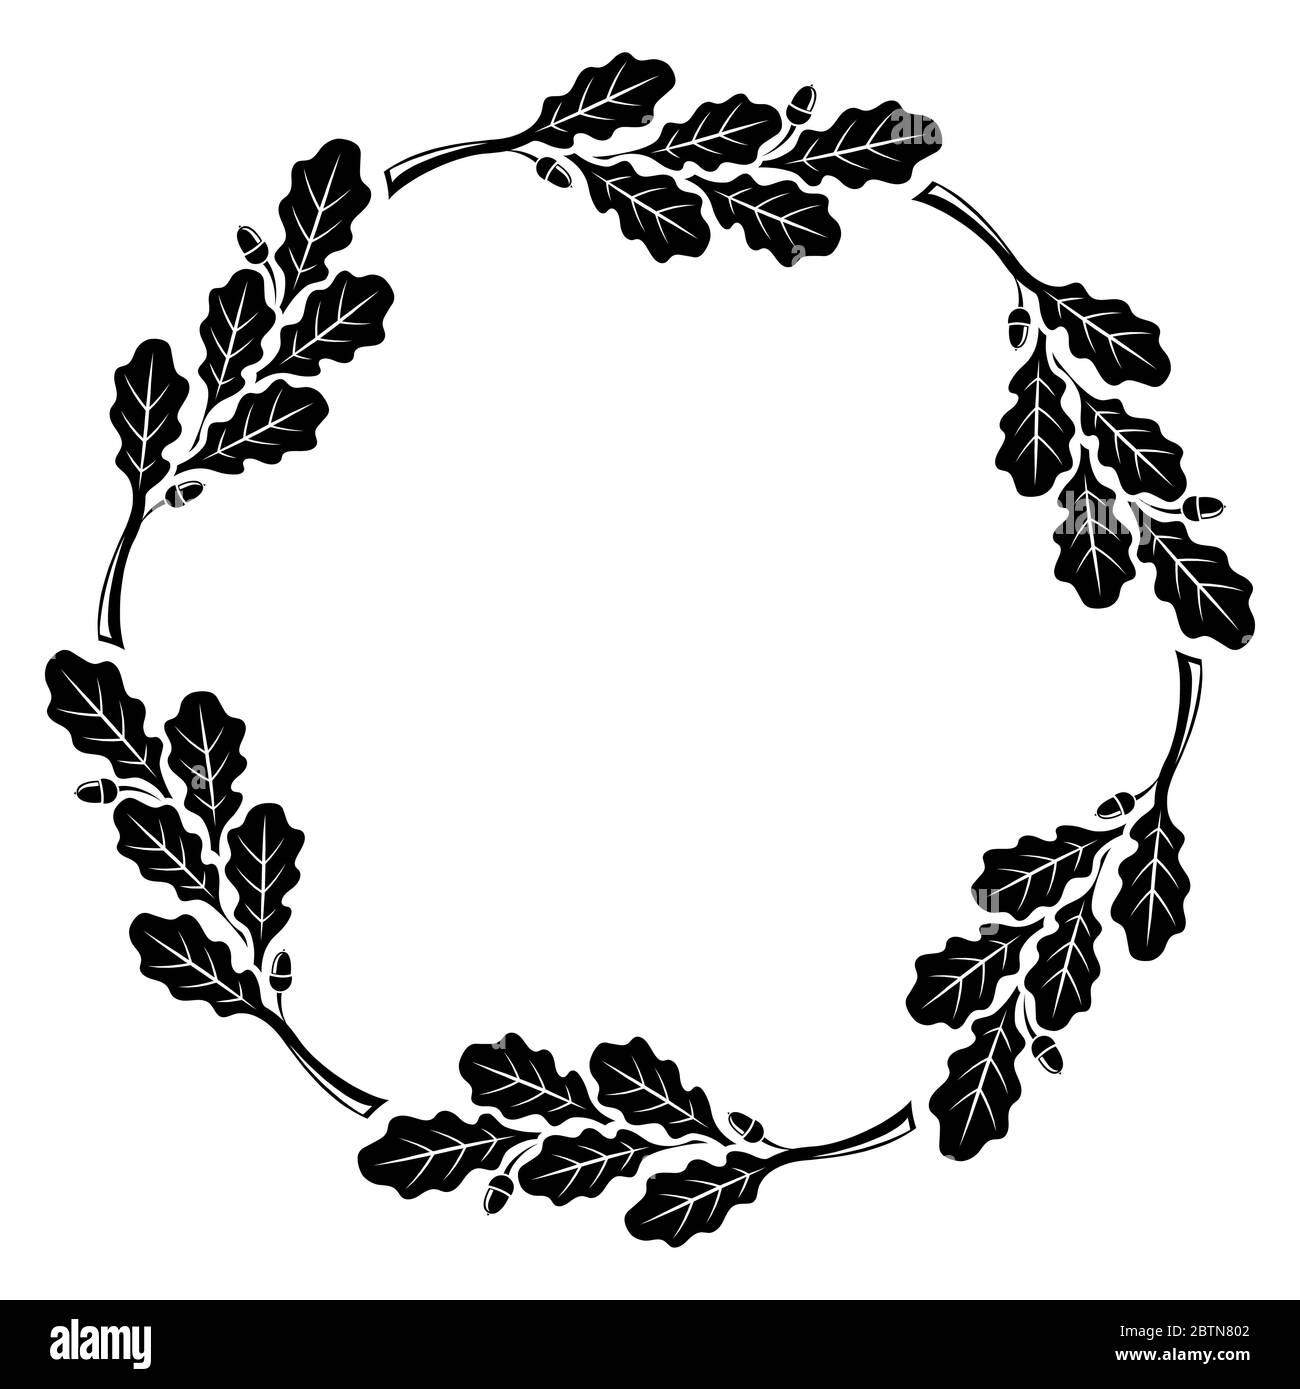 Cadre rond de feuilles de chêne, design vintage Illustration de Vecteur